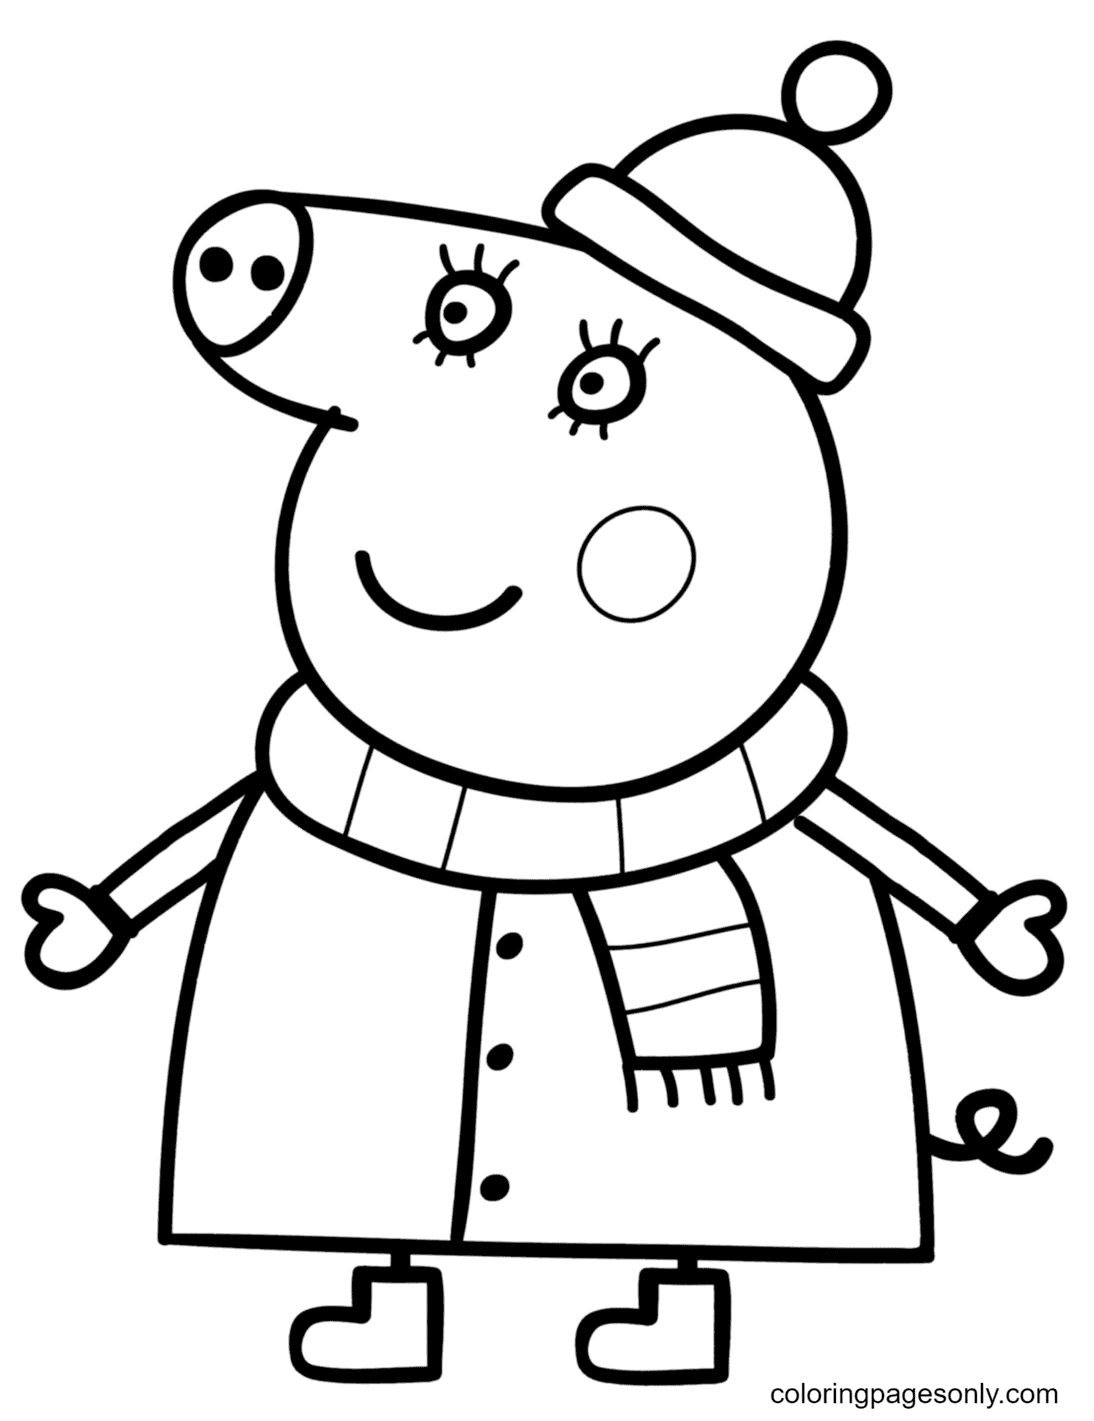 Мама Свинка в зимнем костюме из мультфильма «Свинка Пеппа»